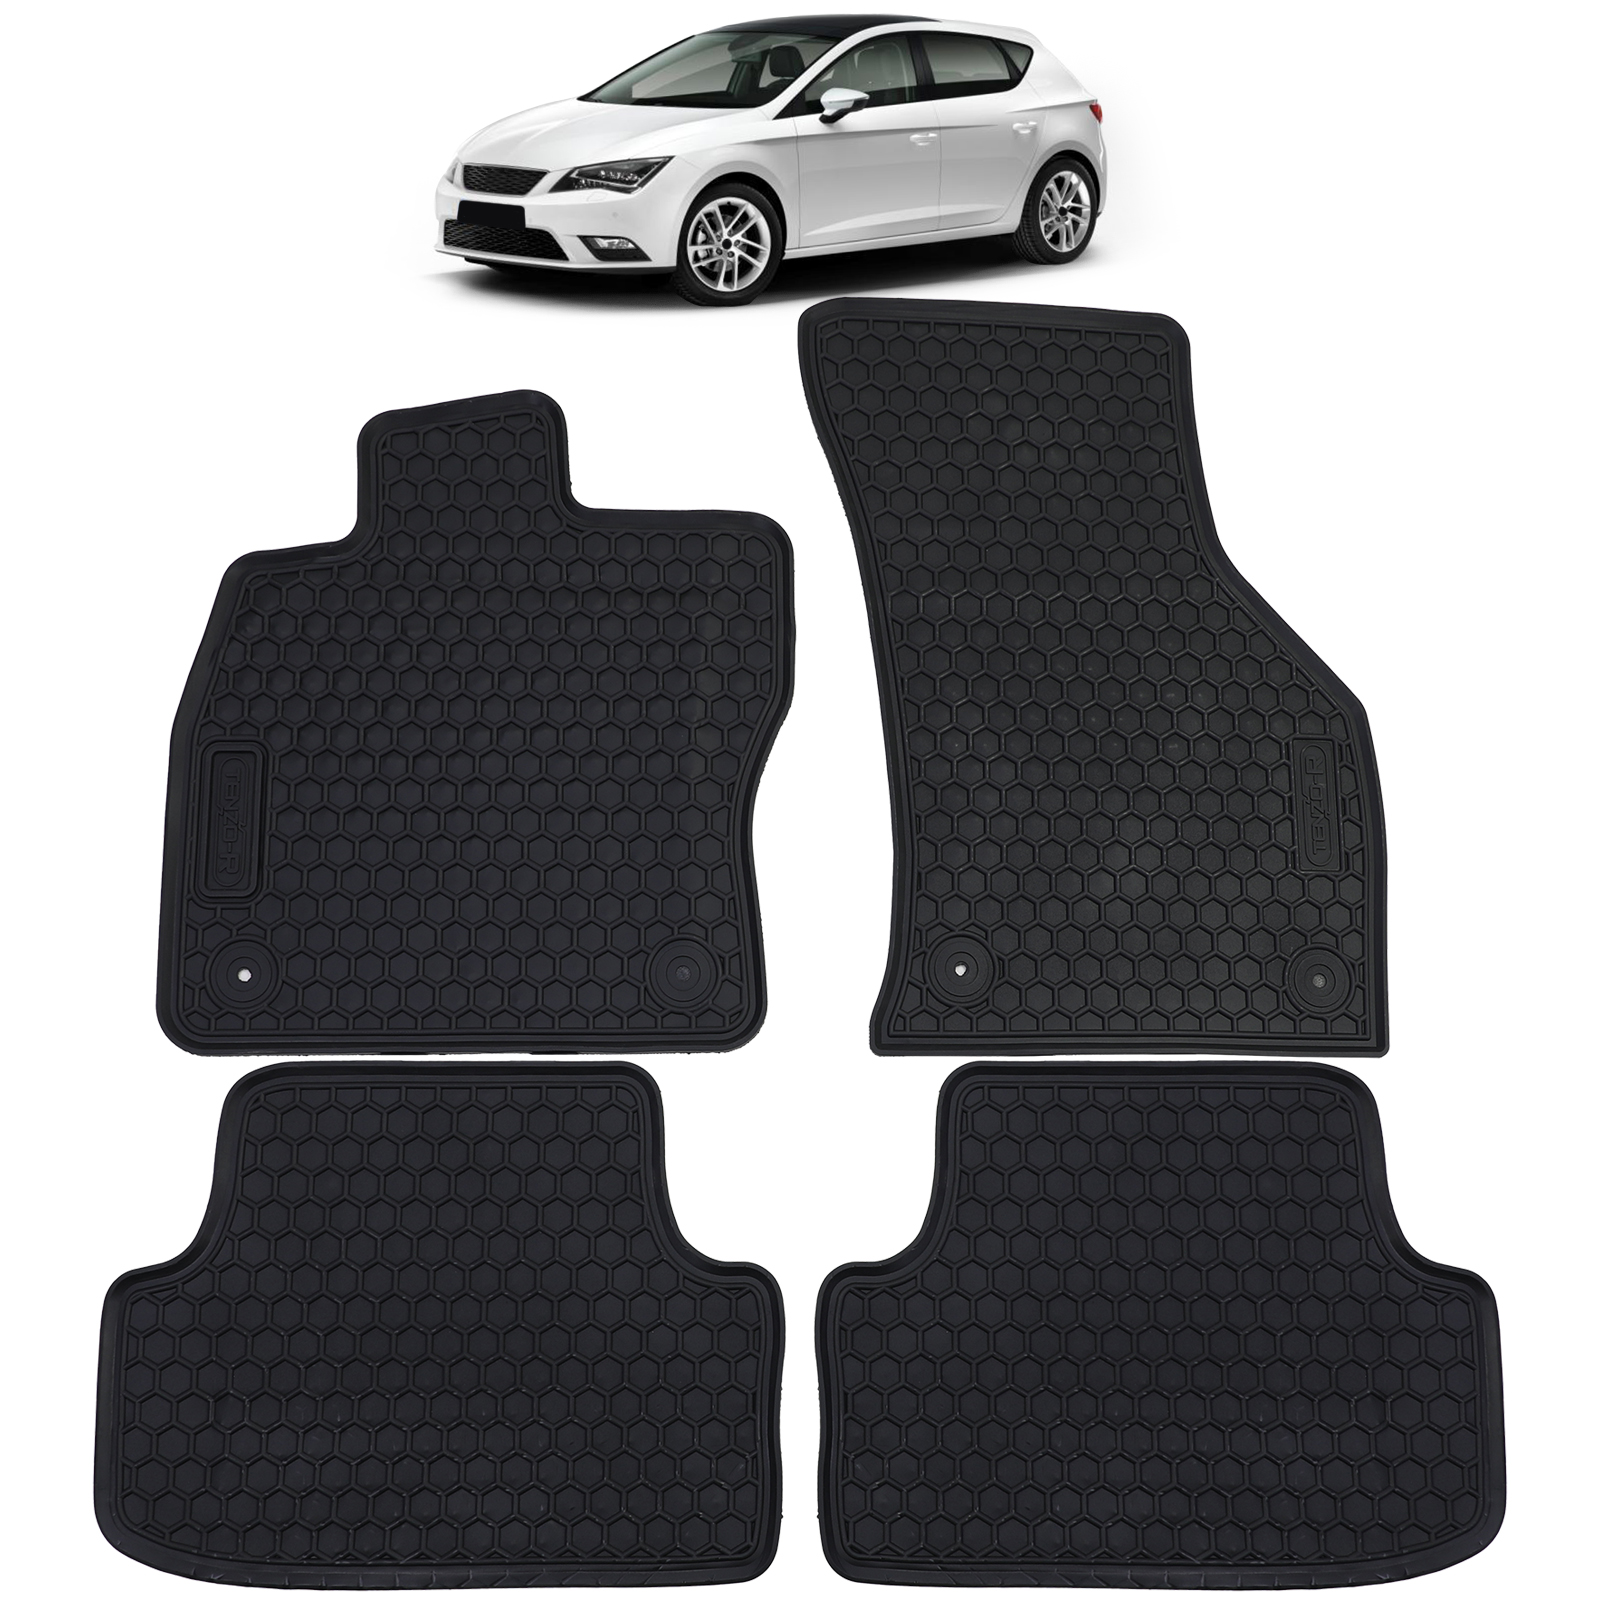 Auto Gummi Fußmatten Schwarz Premium Set für Leon + Golf 7 + Audi